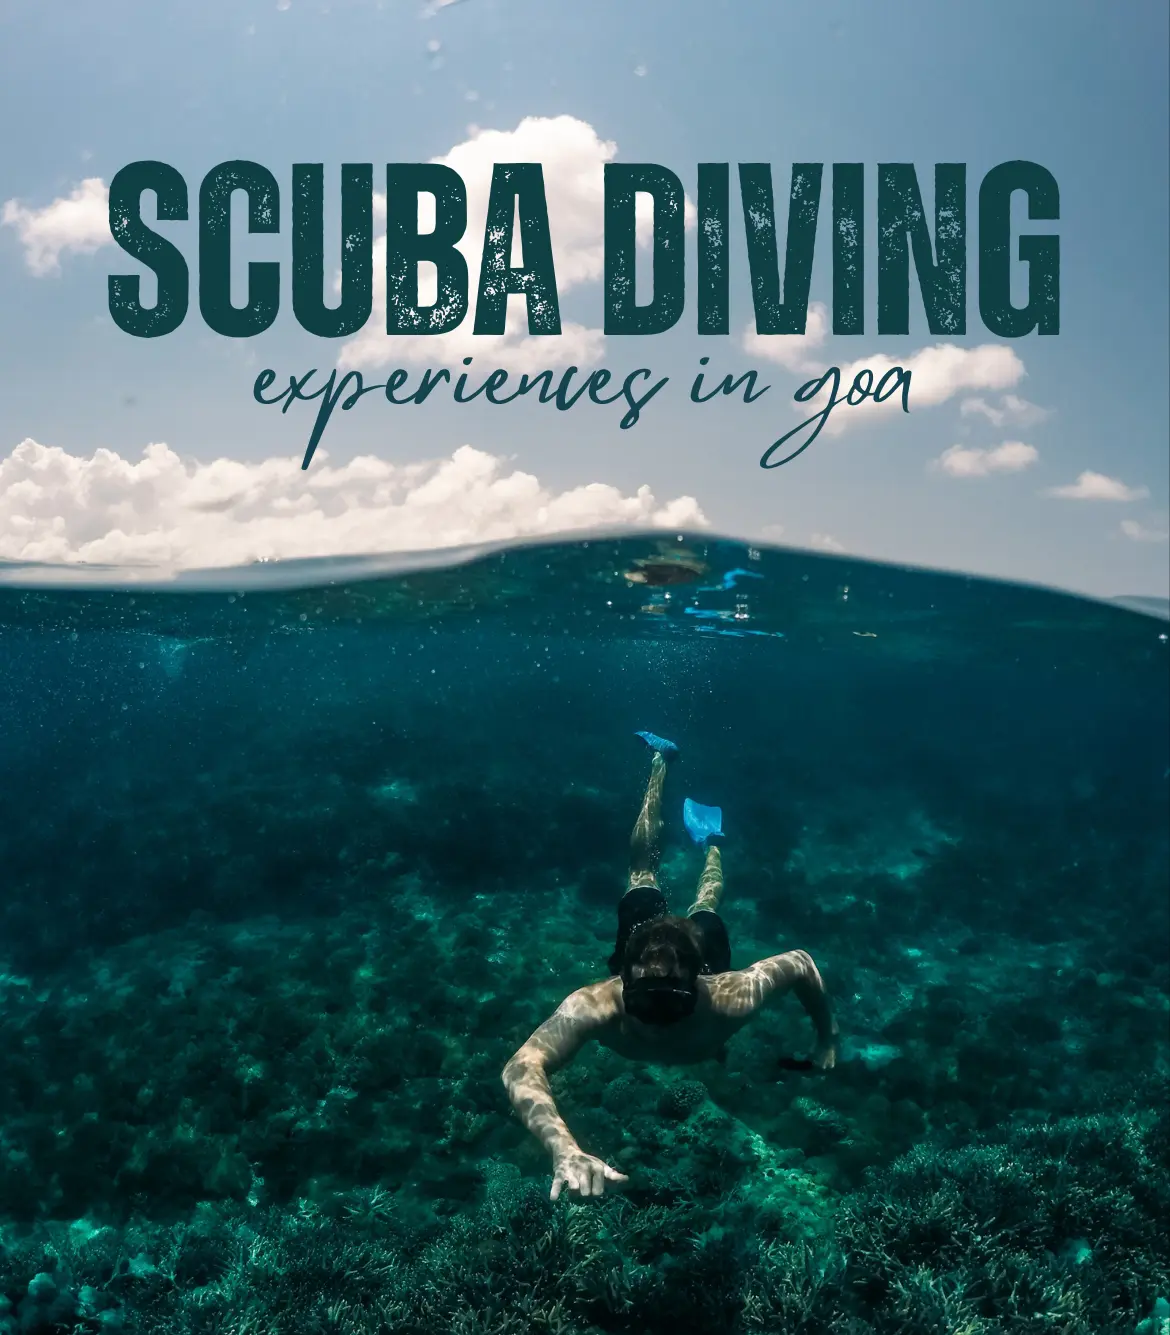 Premium Scuba Diving in Goa